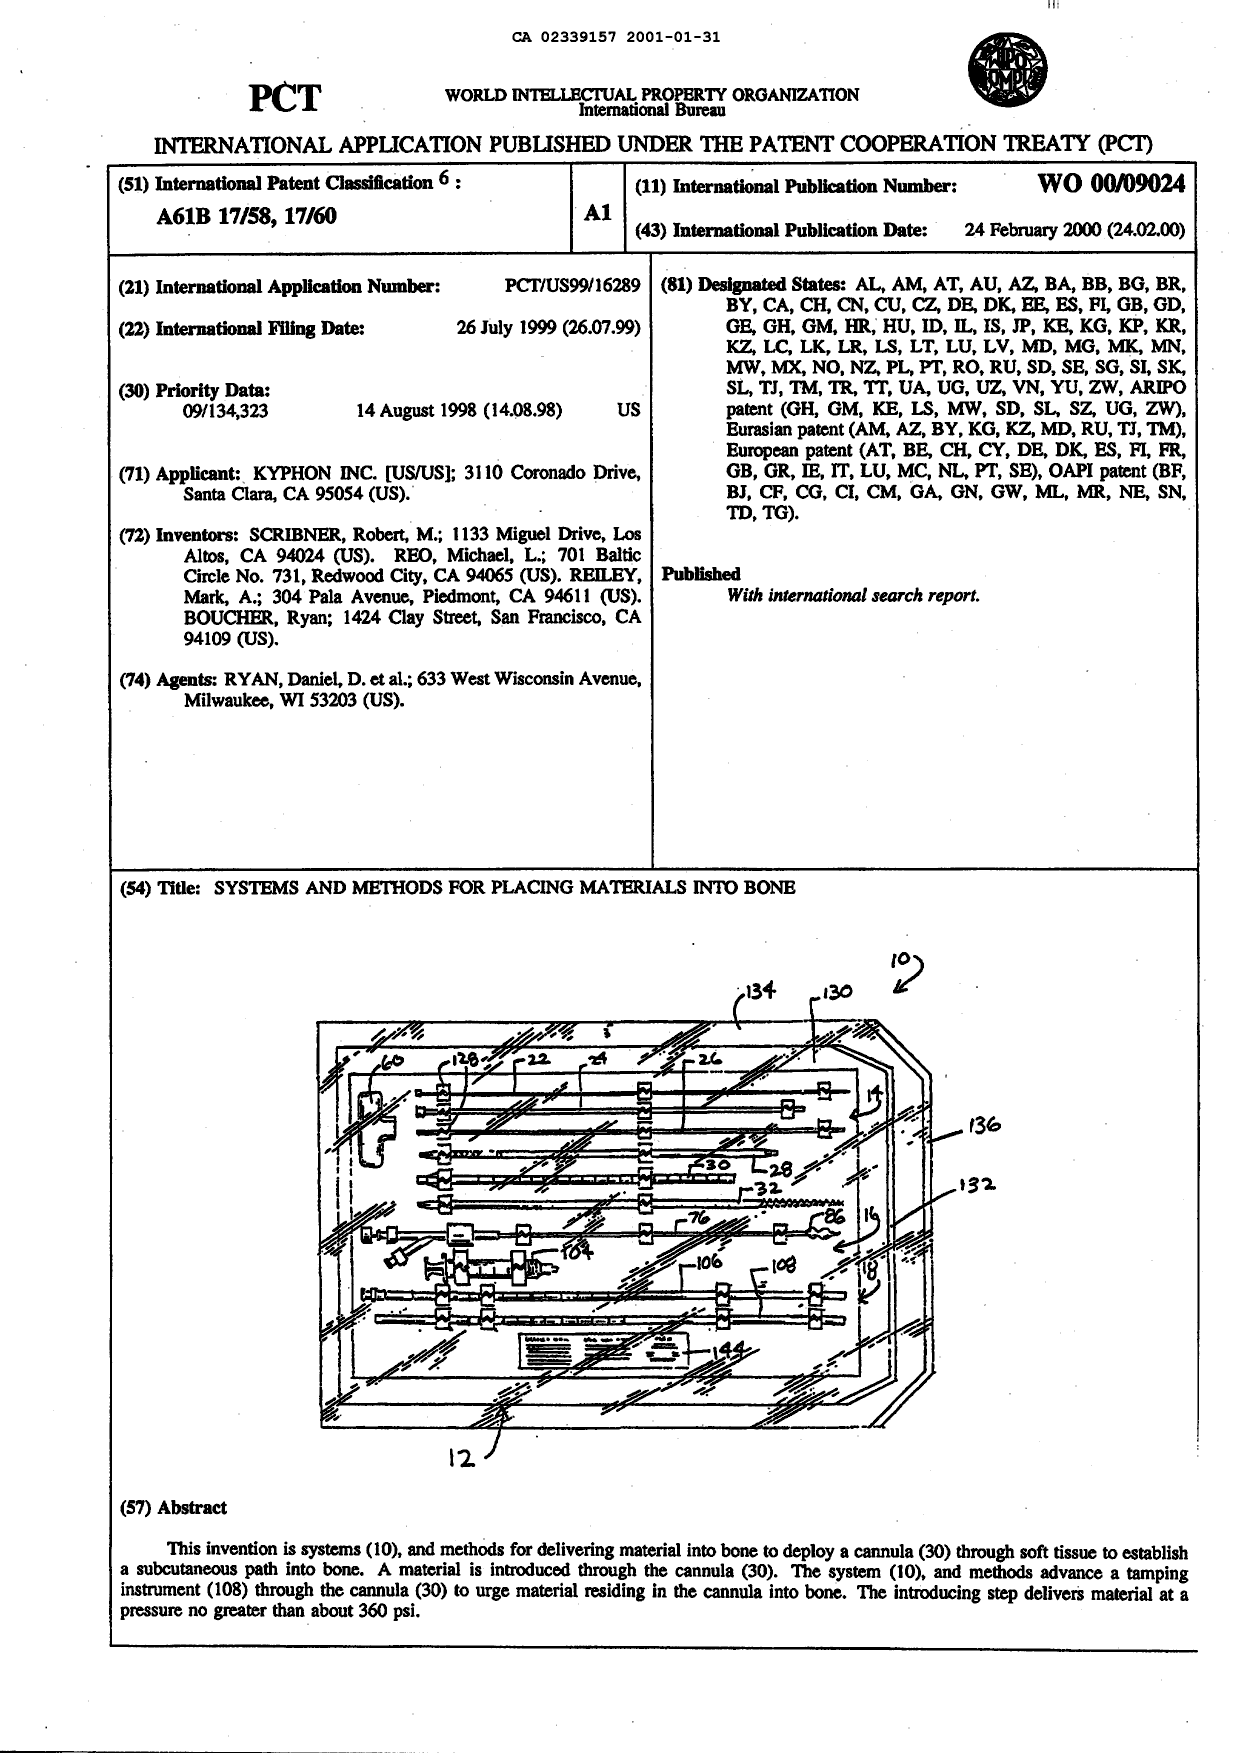 Document de brevet canadien 2339157. Abrégé 20010131. Image 1 de 1